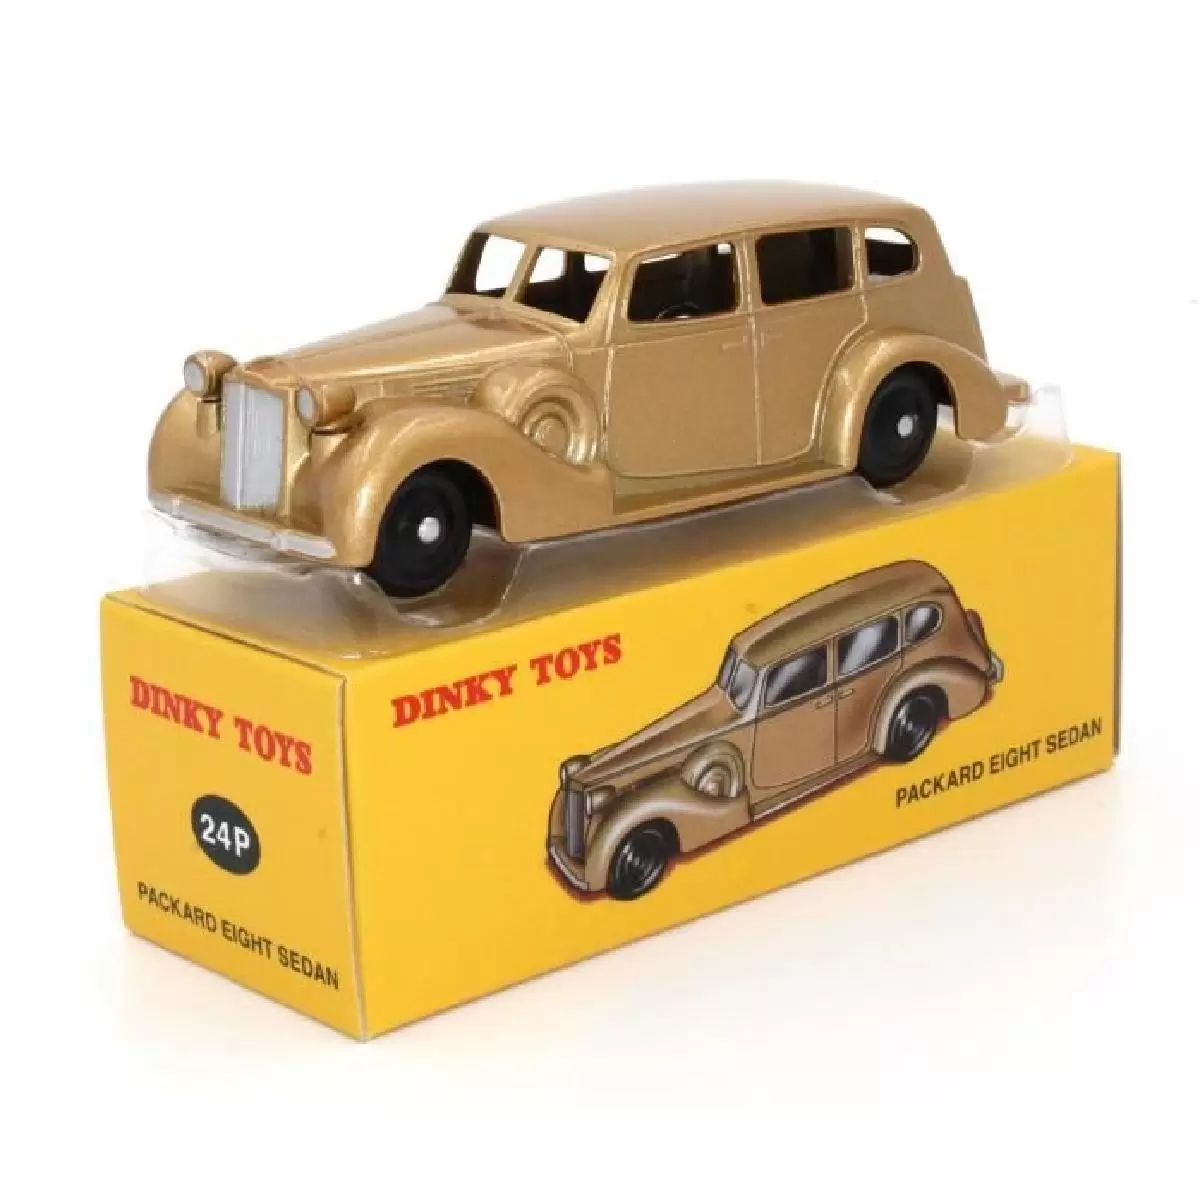 Atlas - Classic Dinky Toys Collection - PACKARD Eight Sedan (Doré)